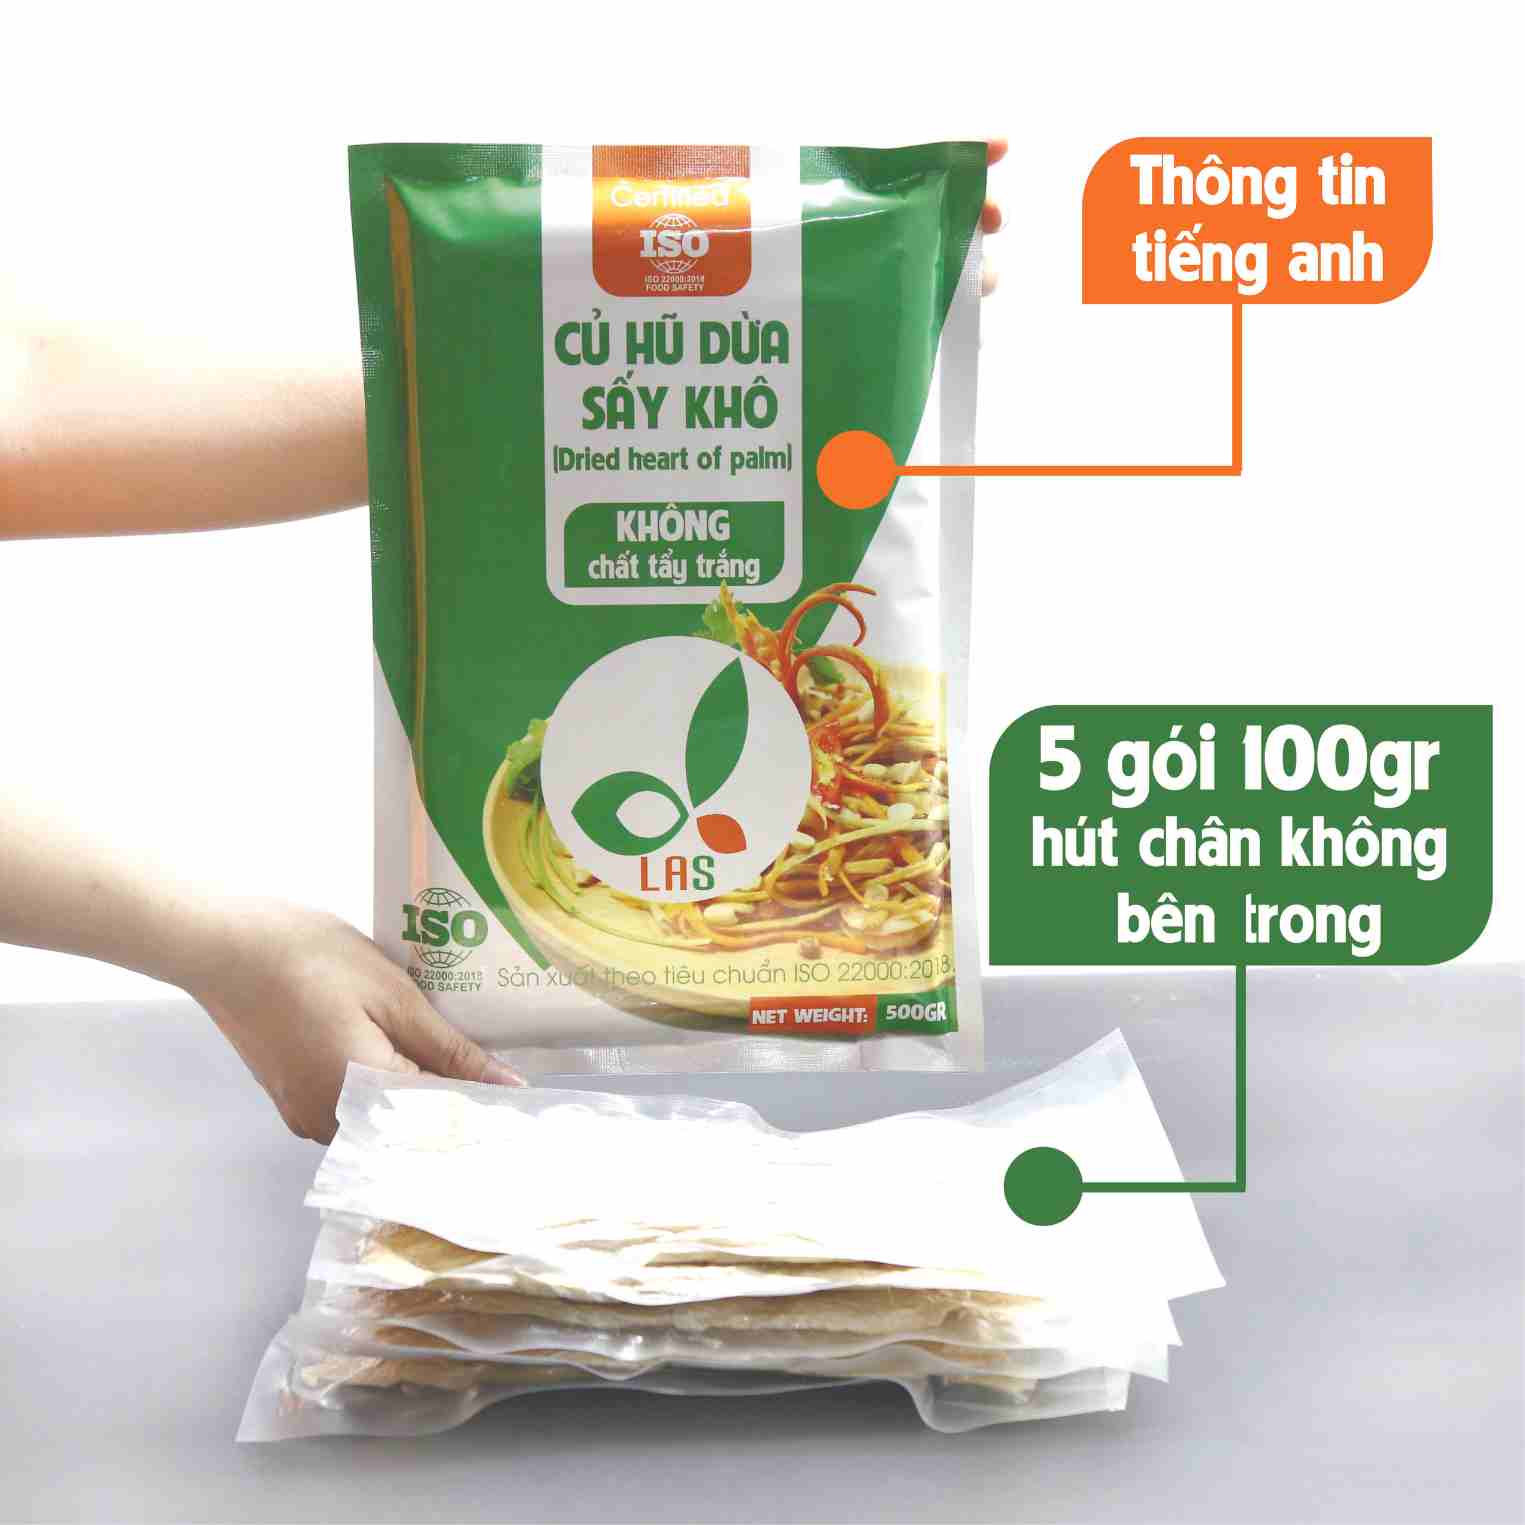 Củ hủ dừa sấy khô - Gói 500gr túi hút chân không | LAS Việt Nam